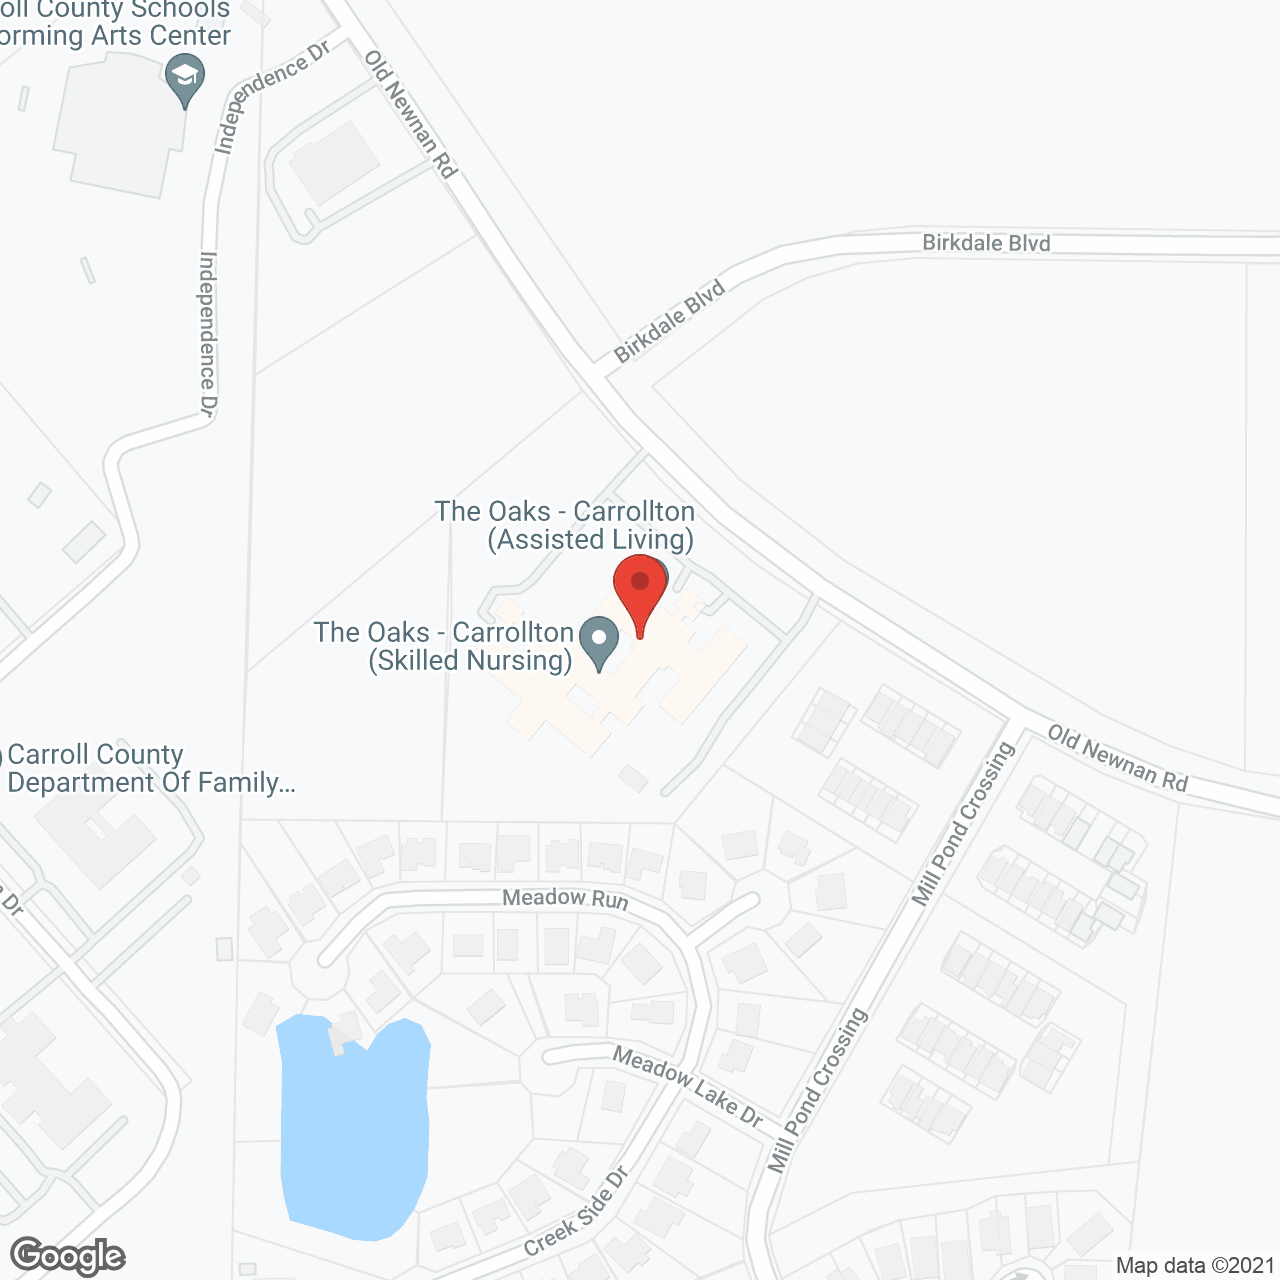 The Oaks - Carrollton in google map